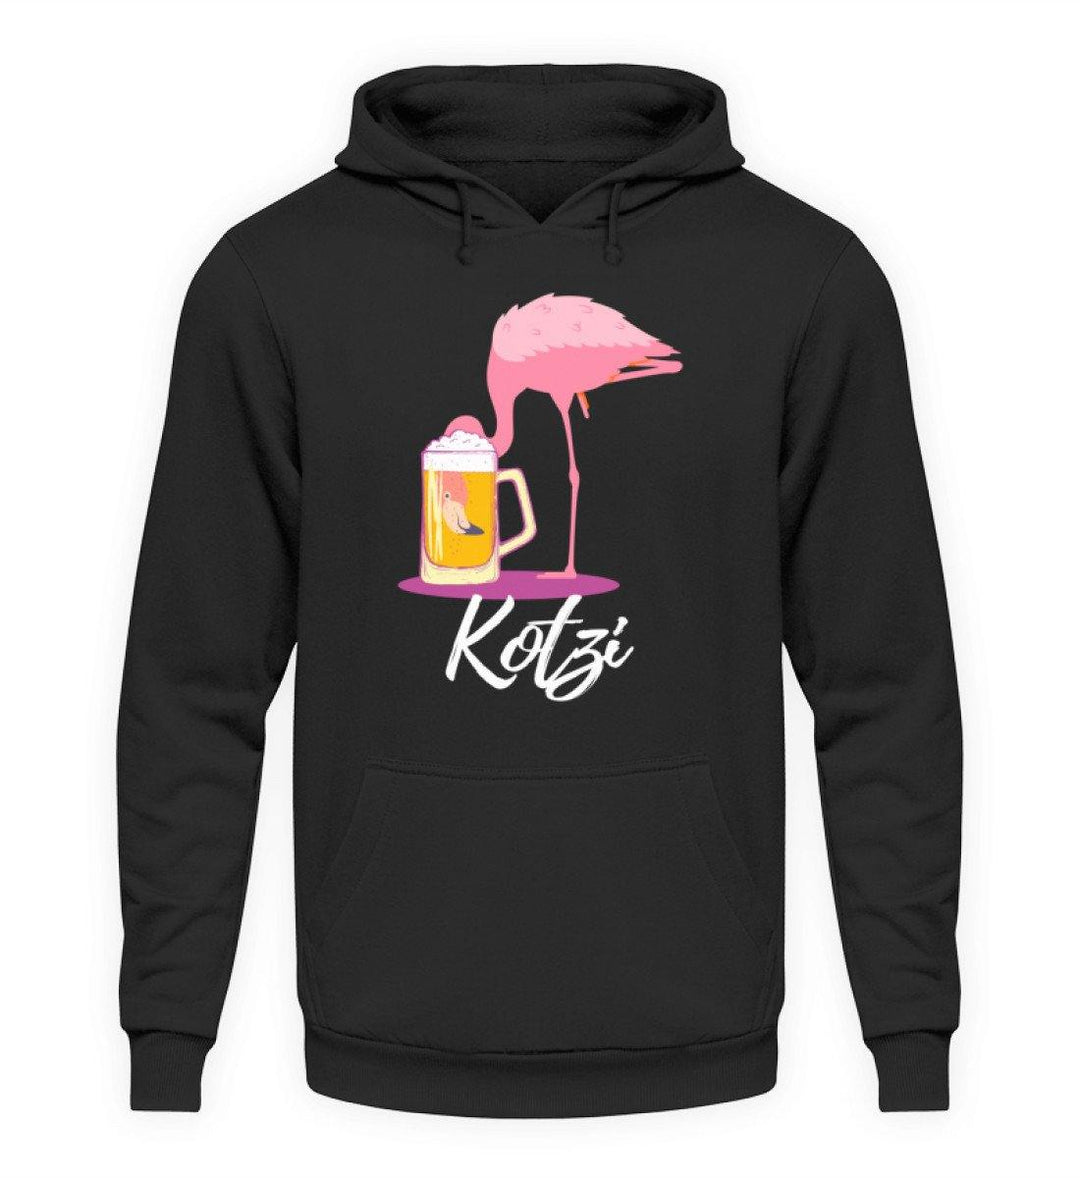 Flamingo Kotzi - Words on Shirt  - Unisex Kapuzenpullover Hoodie - Words on Shirts Sag es mit dem Mittelfinger Shirts Hoodies Sweatshirt Taschen Gymsack Spruch Sprüche Statement